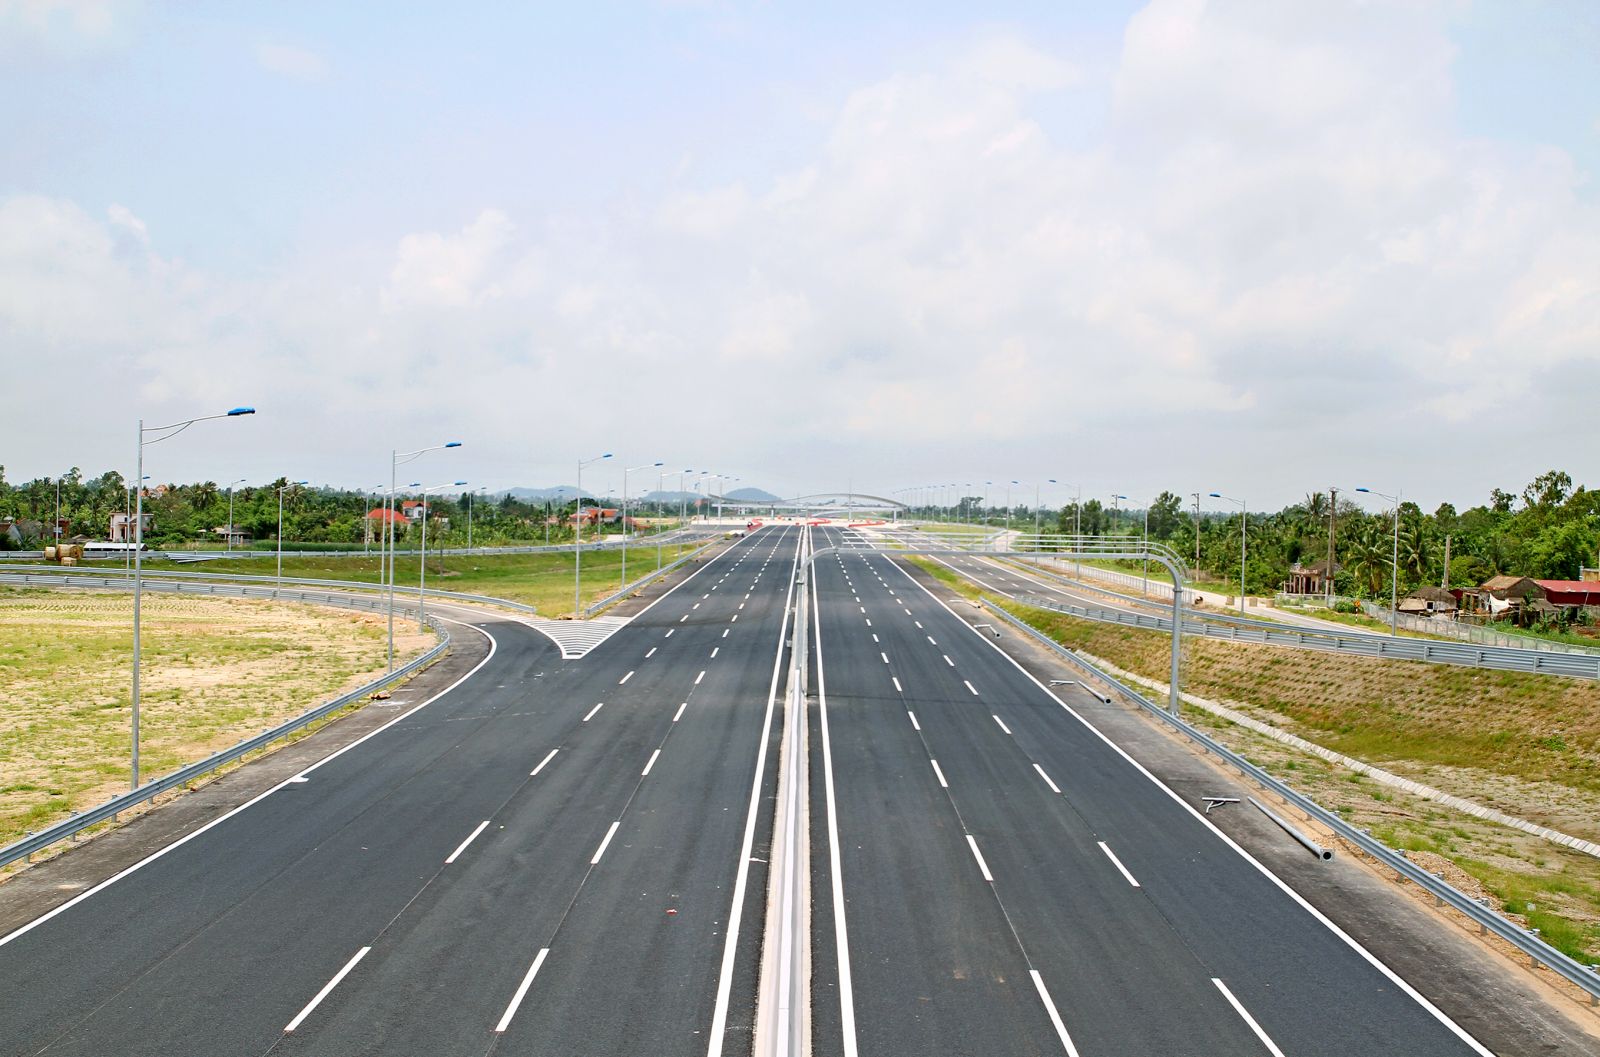 Ban quản lý dự án 2 vừa đề xuất đầu tư dự án đường cao tốc TP.HCM - Mộc Bài (Tây Ninh) với tổng mức đầu tư khoảng 10.456 tỷ đồng. (Ảnh minh họa)